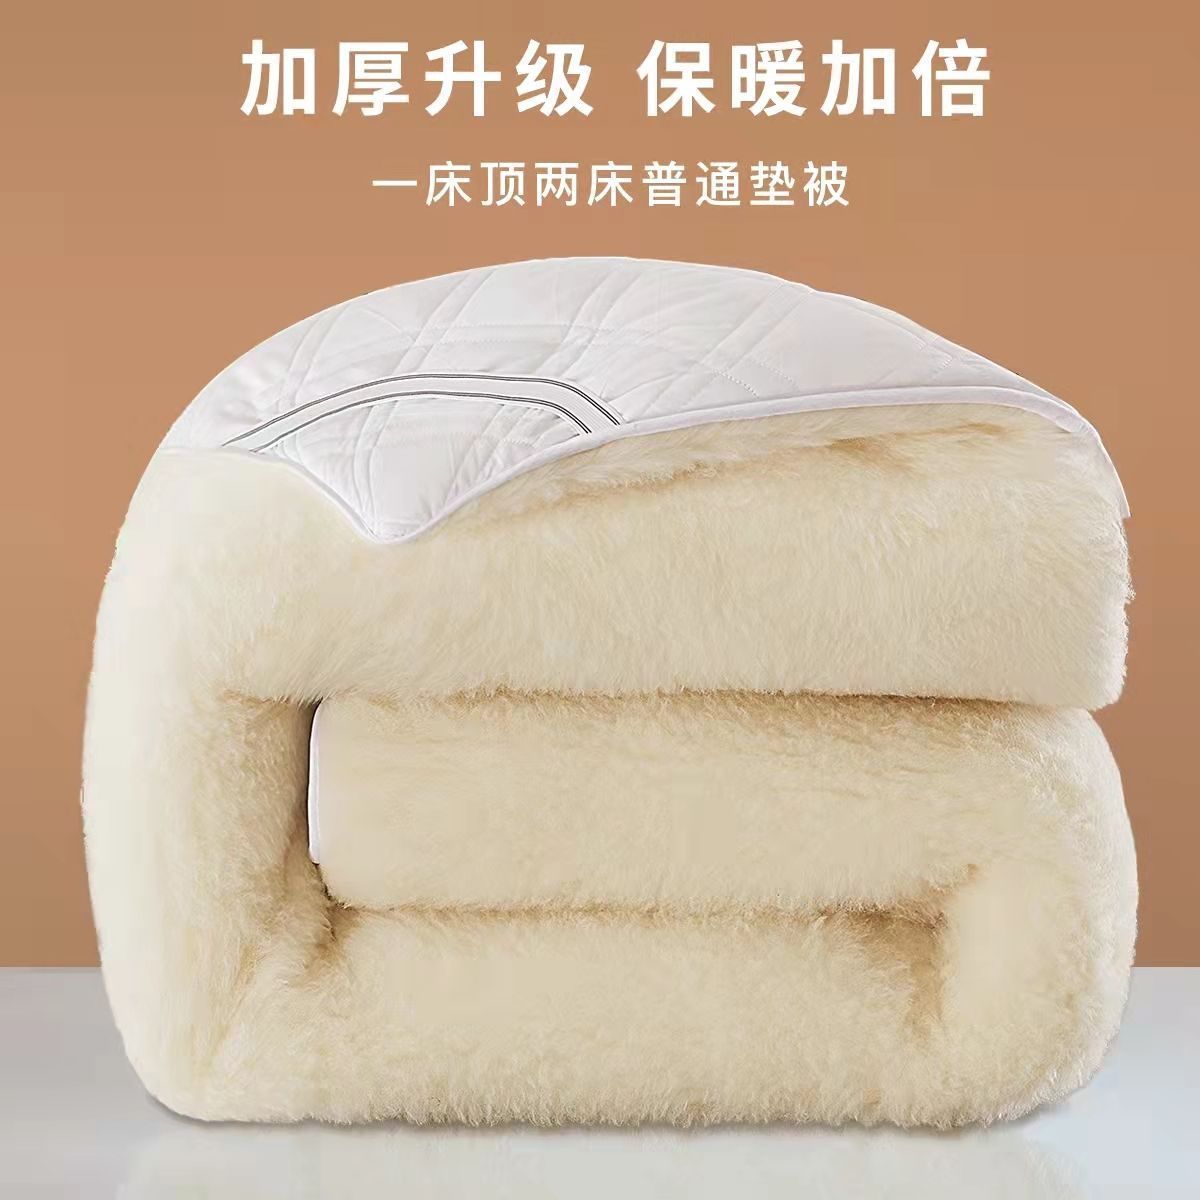 正品澳洲纯羊毛床垫加厚绒床垫被褥子双人床单人床褥宿舍秋冬保暖